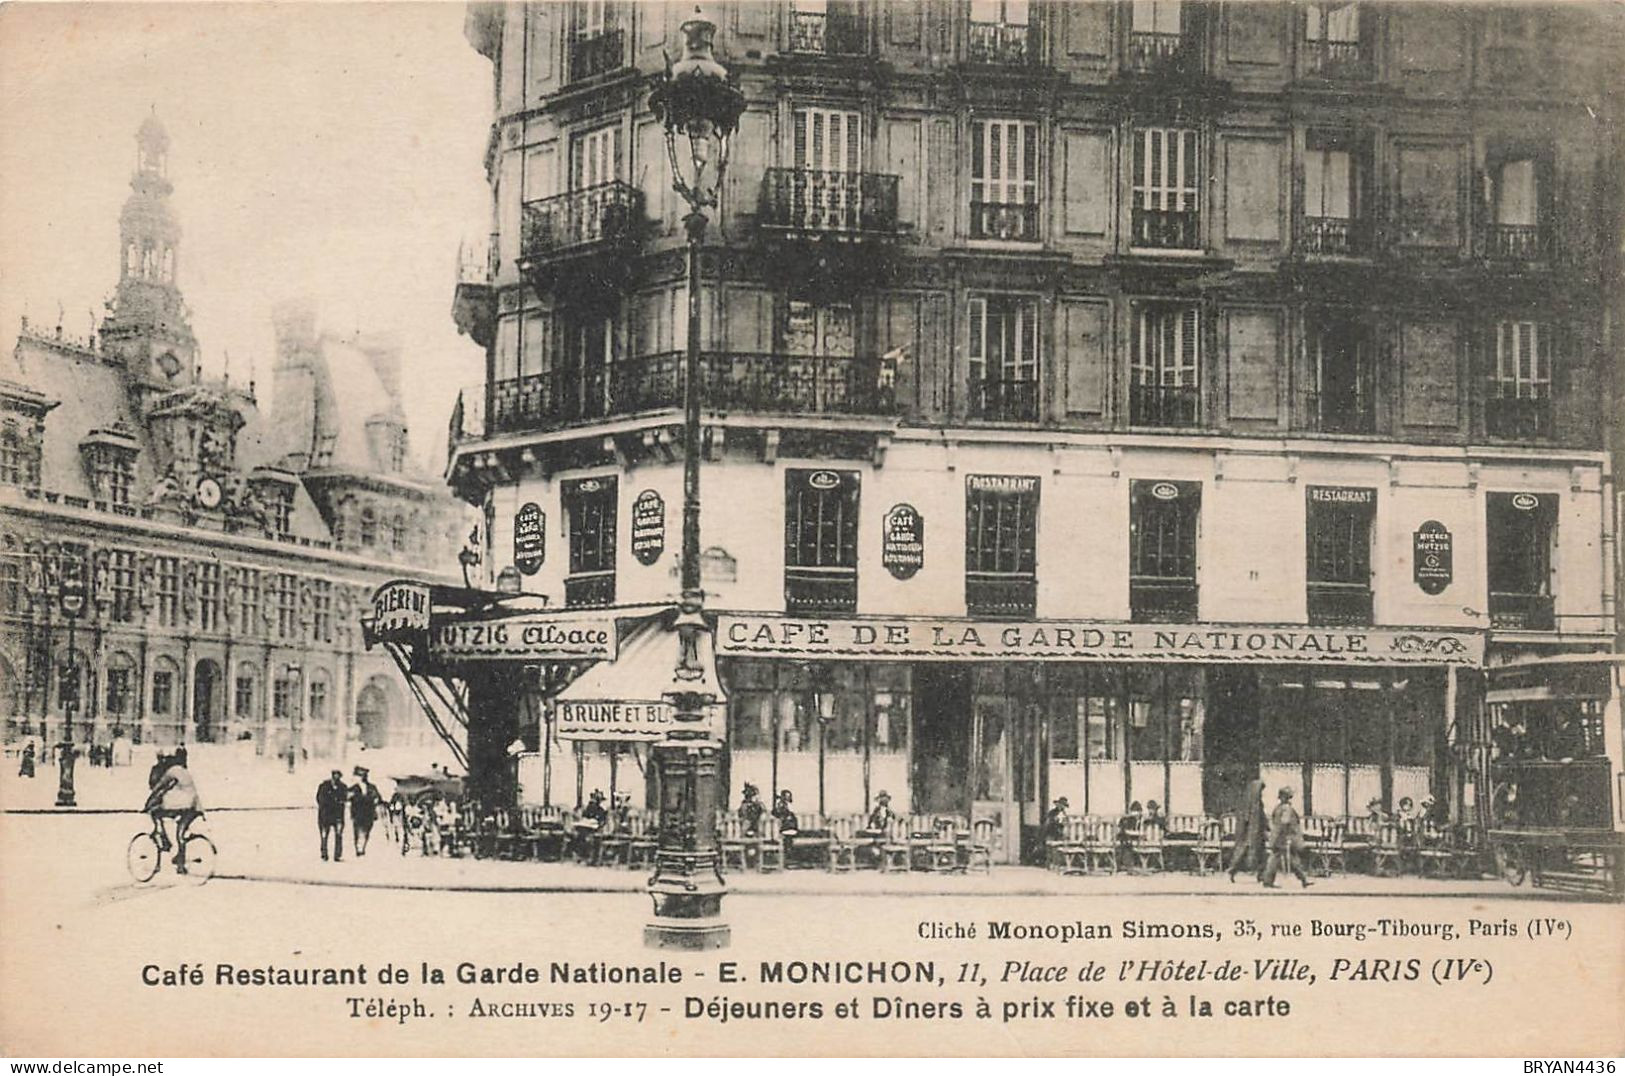 PARIS 16 ème - CAFE RESTAURANT De La GARDE NATIONALE - 11, PLACE De L( HOTEL De VILLE - CARTE POSTALE MENU (9x14cm) - Paris (04)